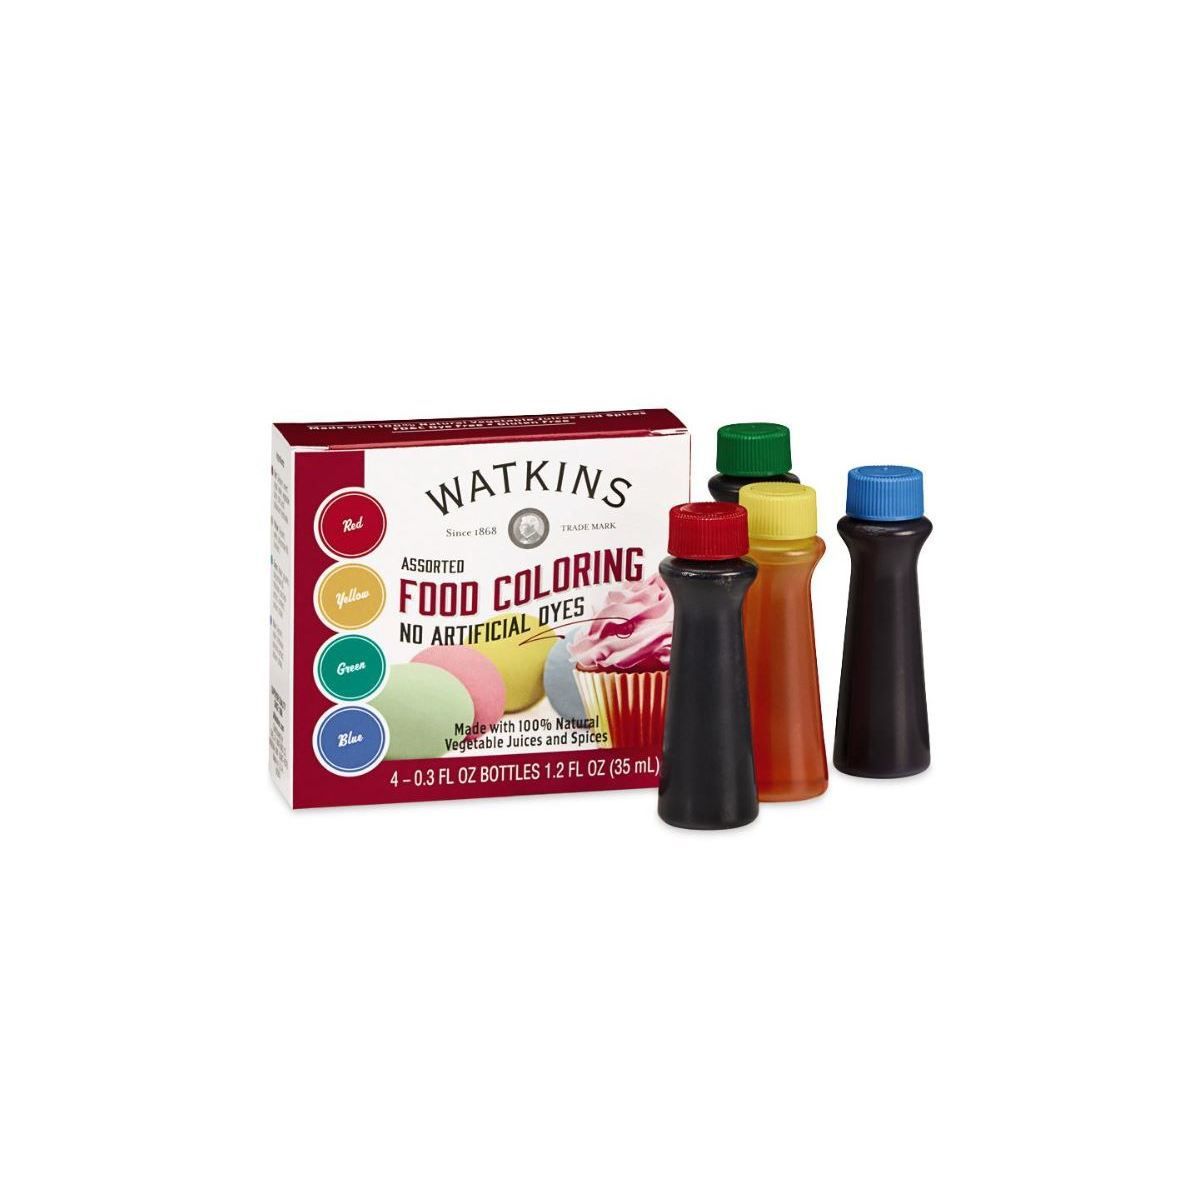 Watkins Assorted Food Coloring - 1.2oz | Target